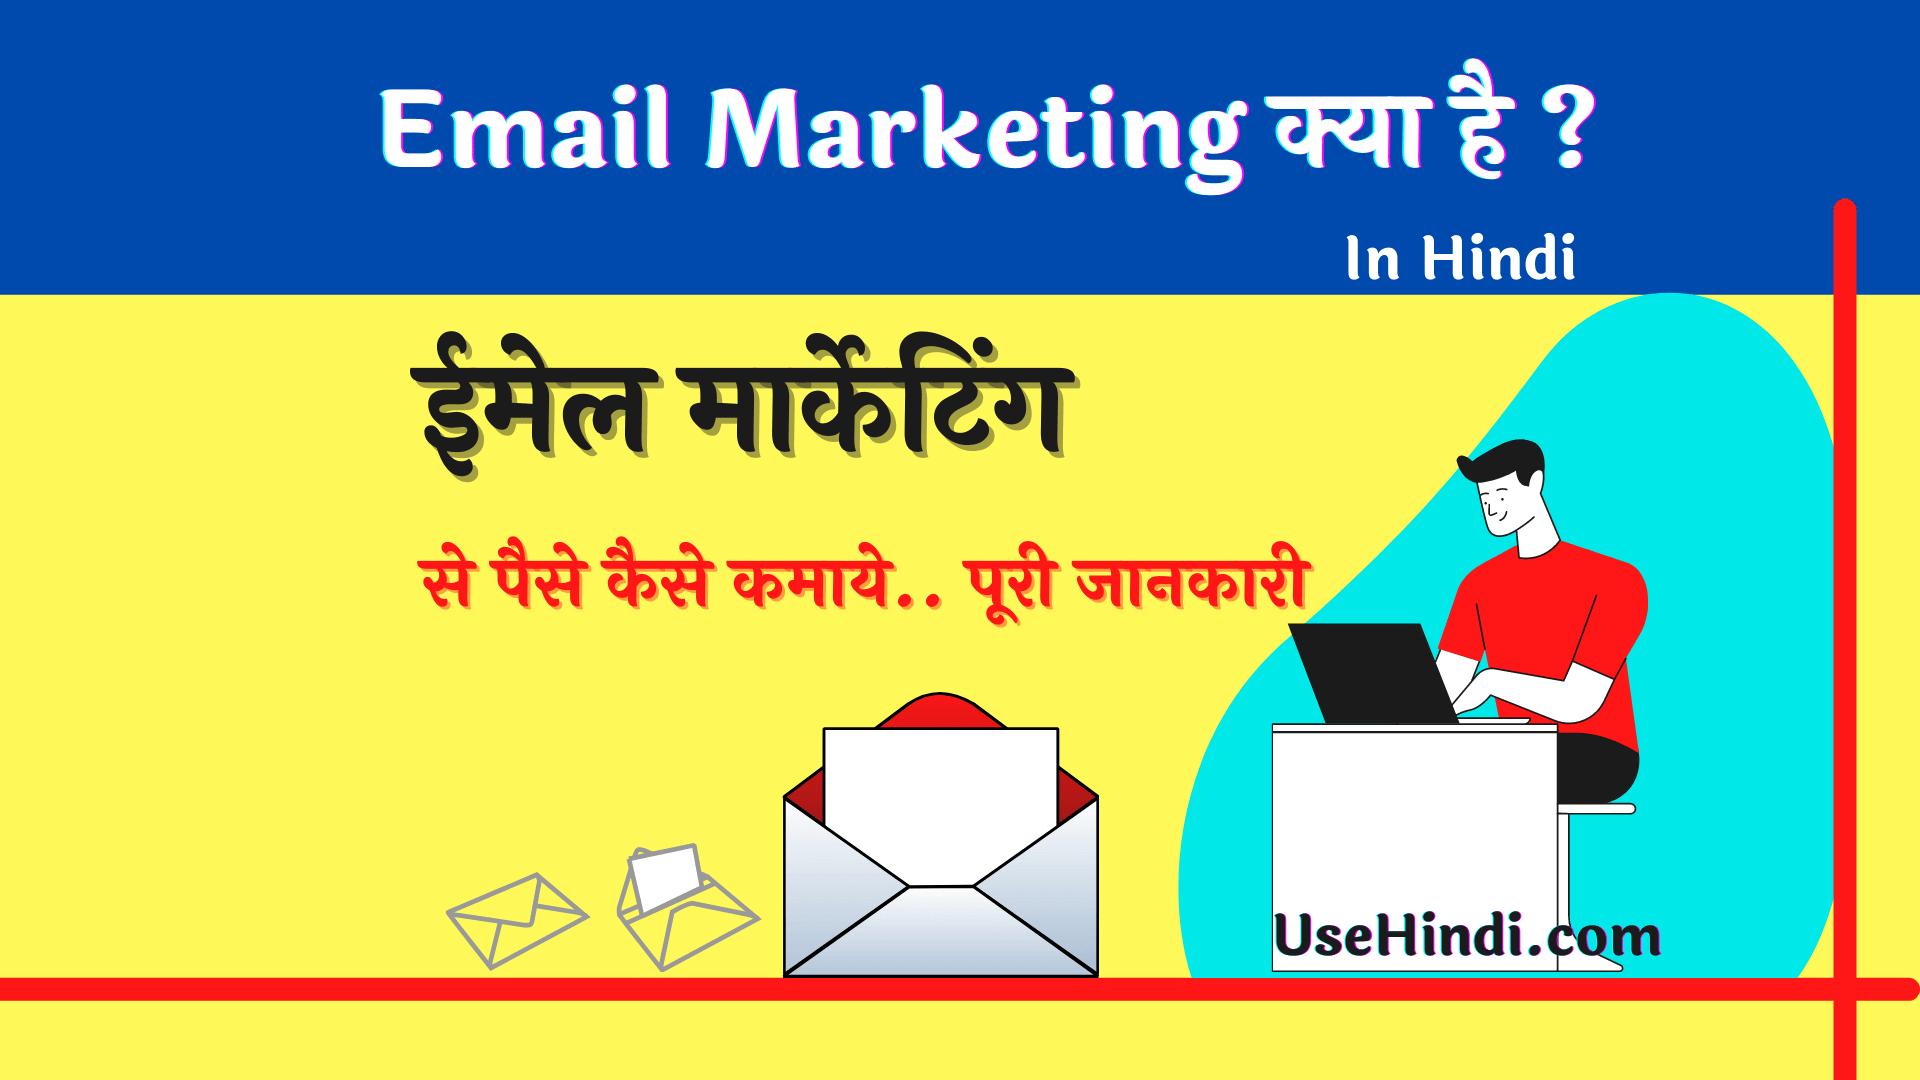 Email Marketing Kya hai